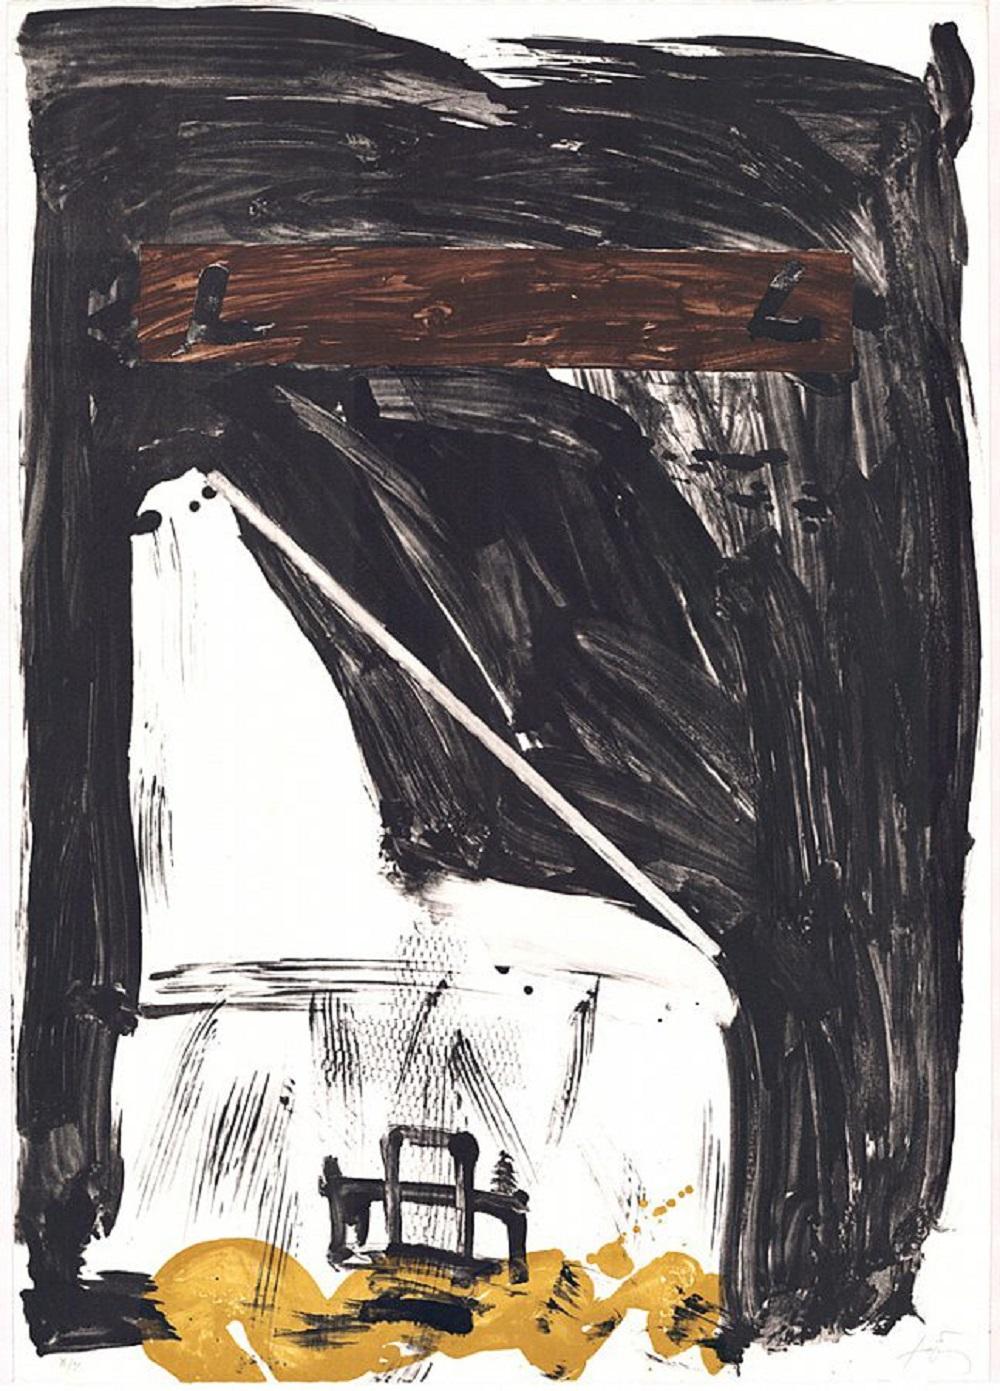 Abstract Print Antoni Tàpies - Lithographie d'art originale en édition limitée signée par un artiste espagnol, numérotée